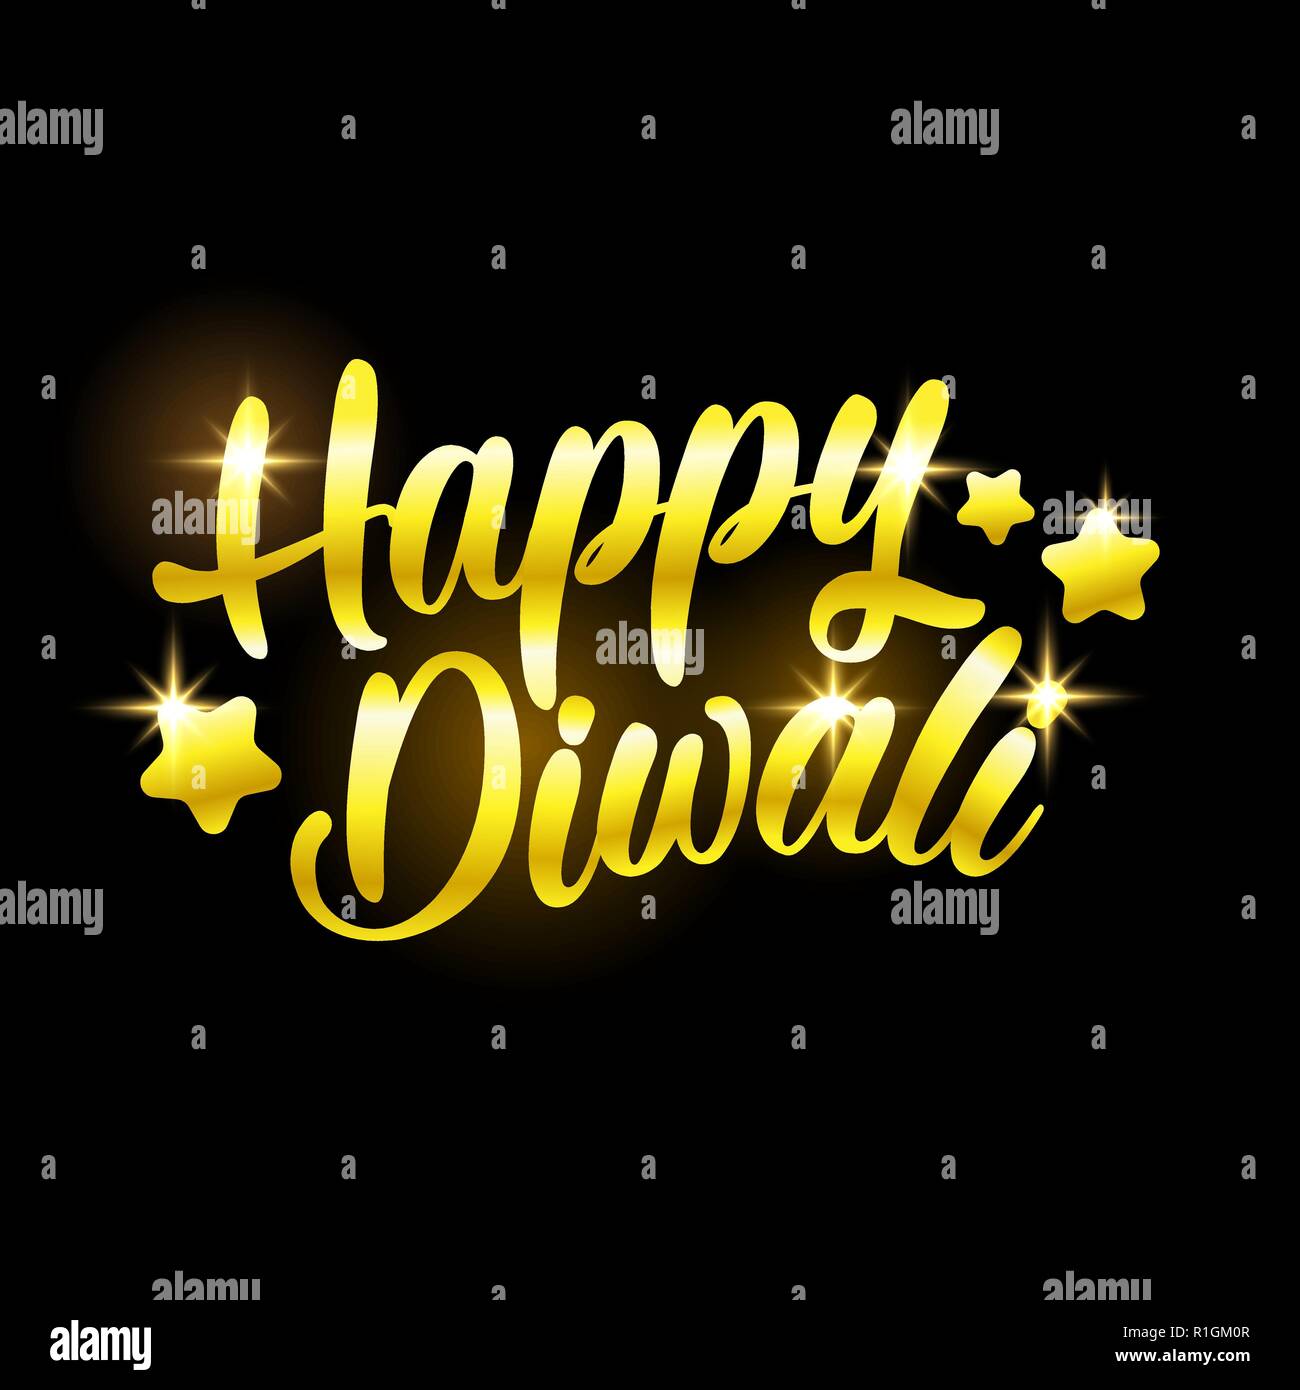 Golden felice Diwali congratulazioni con stelle su sfondo nero Illustrazione Vettoriale